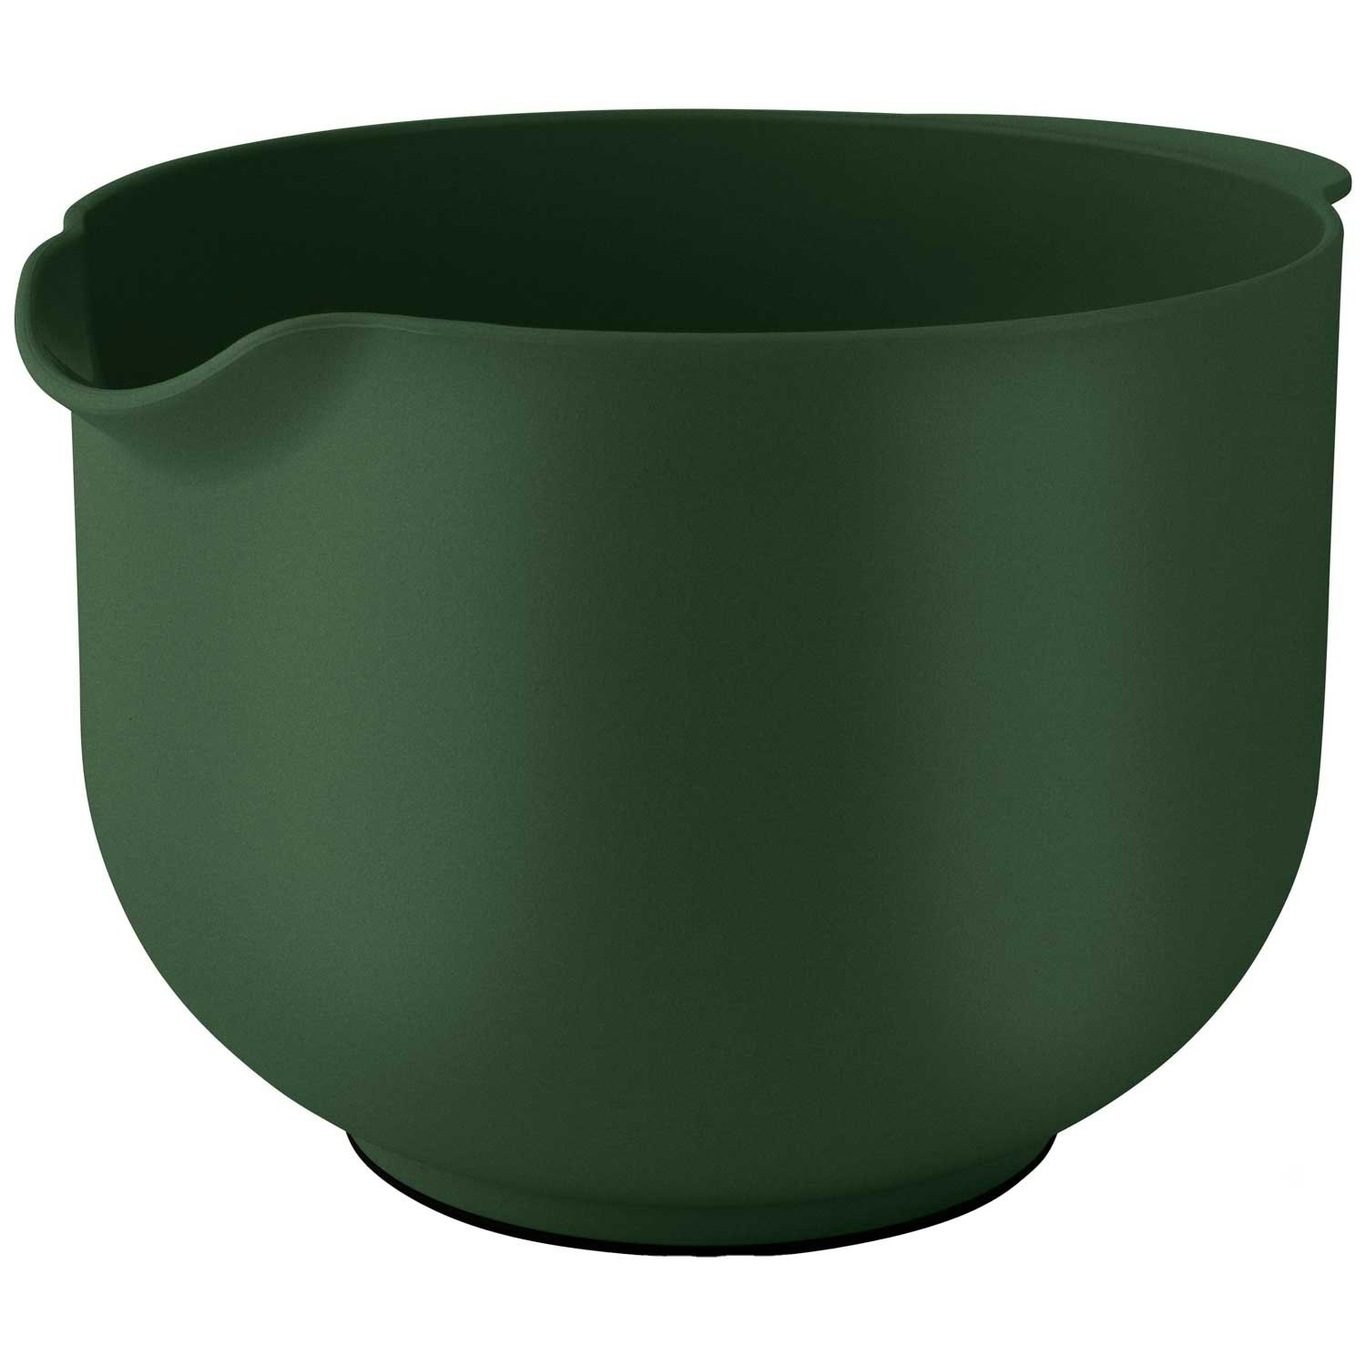 https://royaldesign.com/image/2/eva-solo-eva-mixing-bowl-14?w=800&quality=80